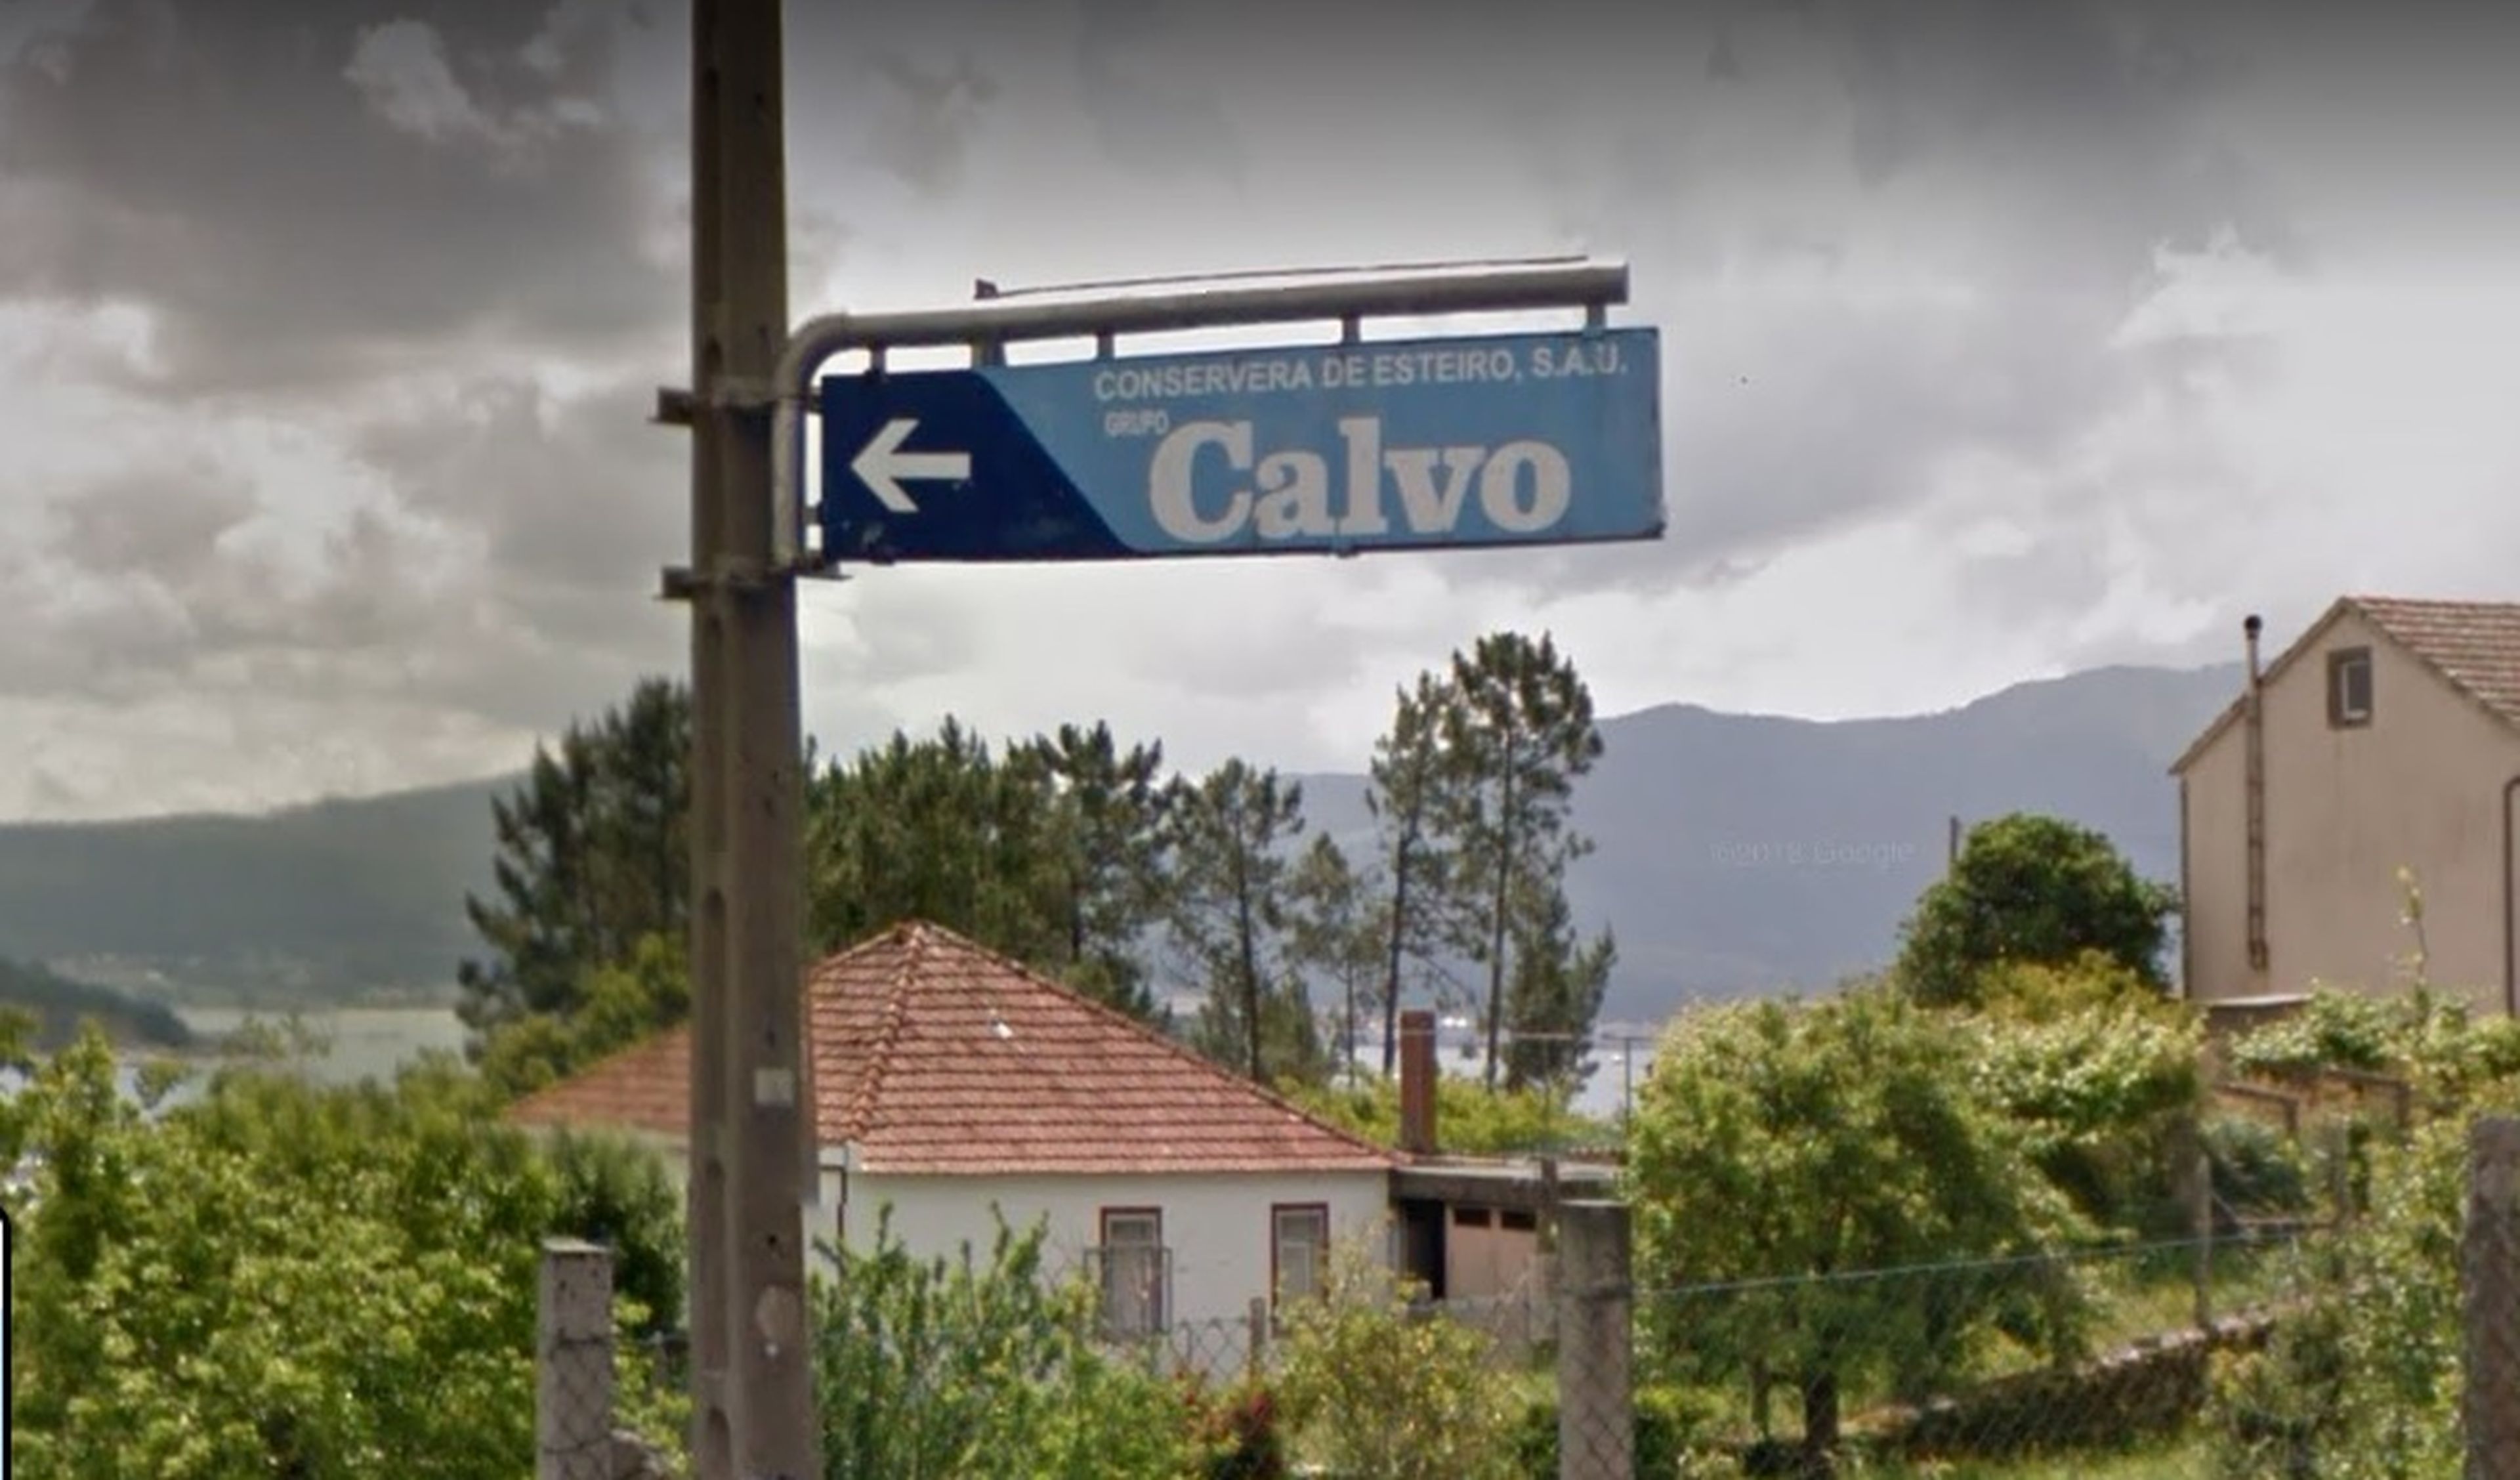 Conservera Calvo en Esteiro, A Coruña